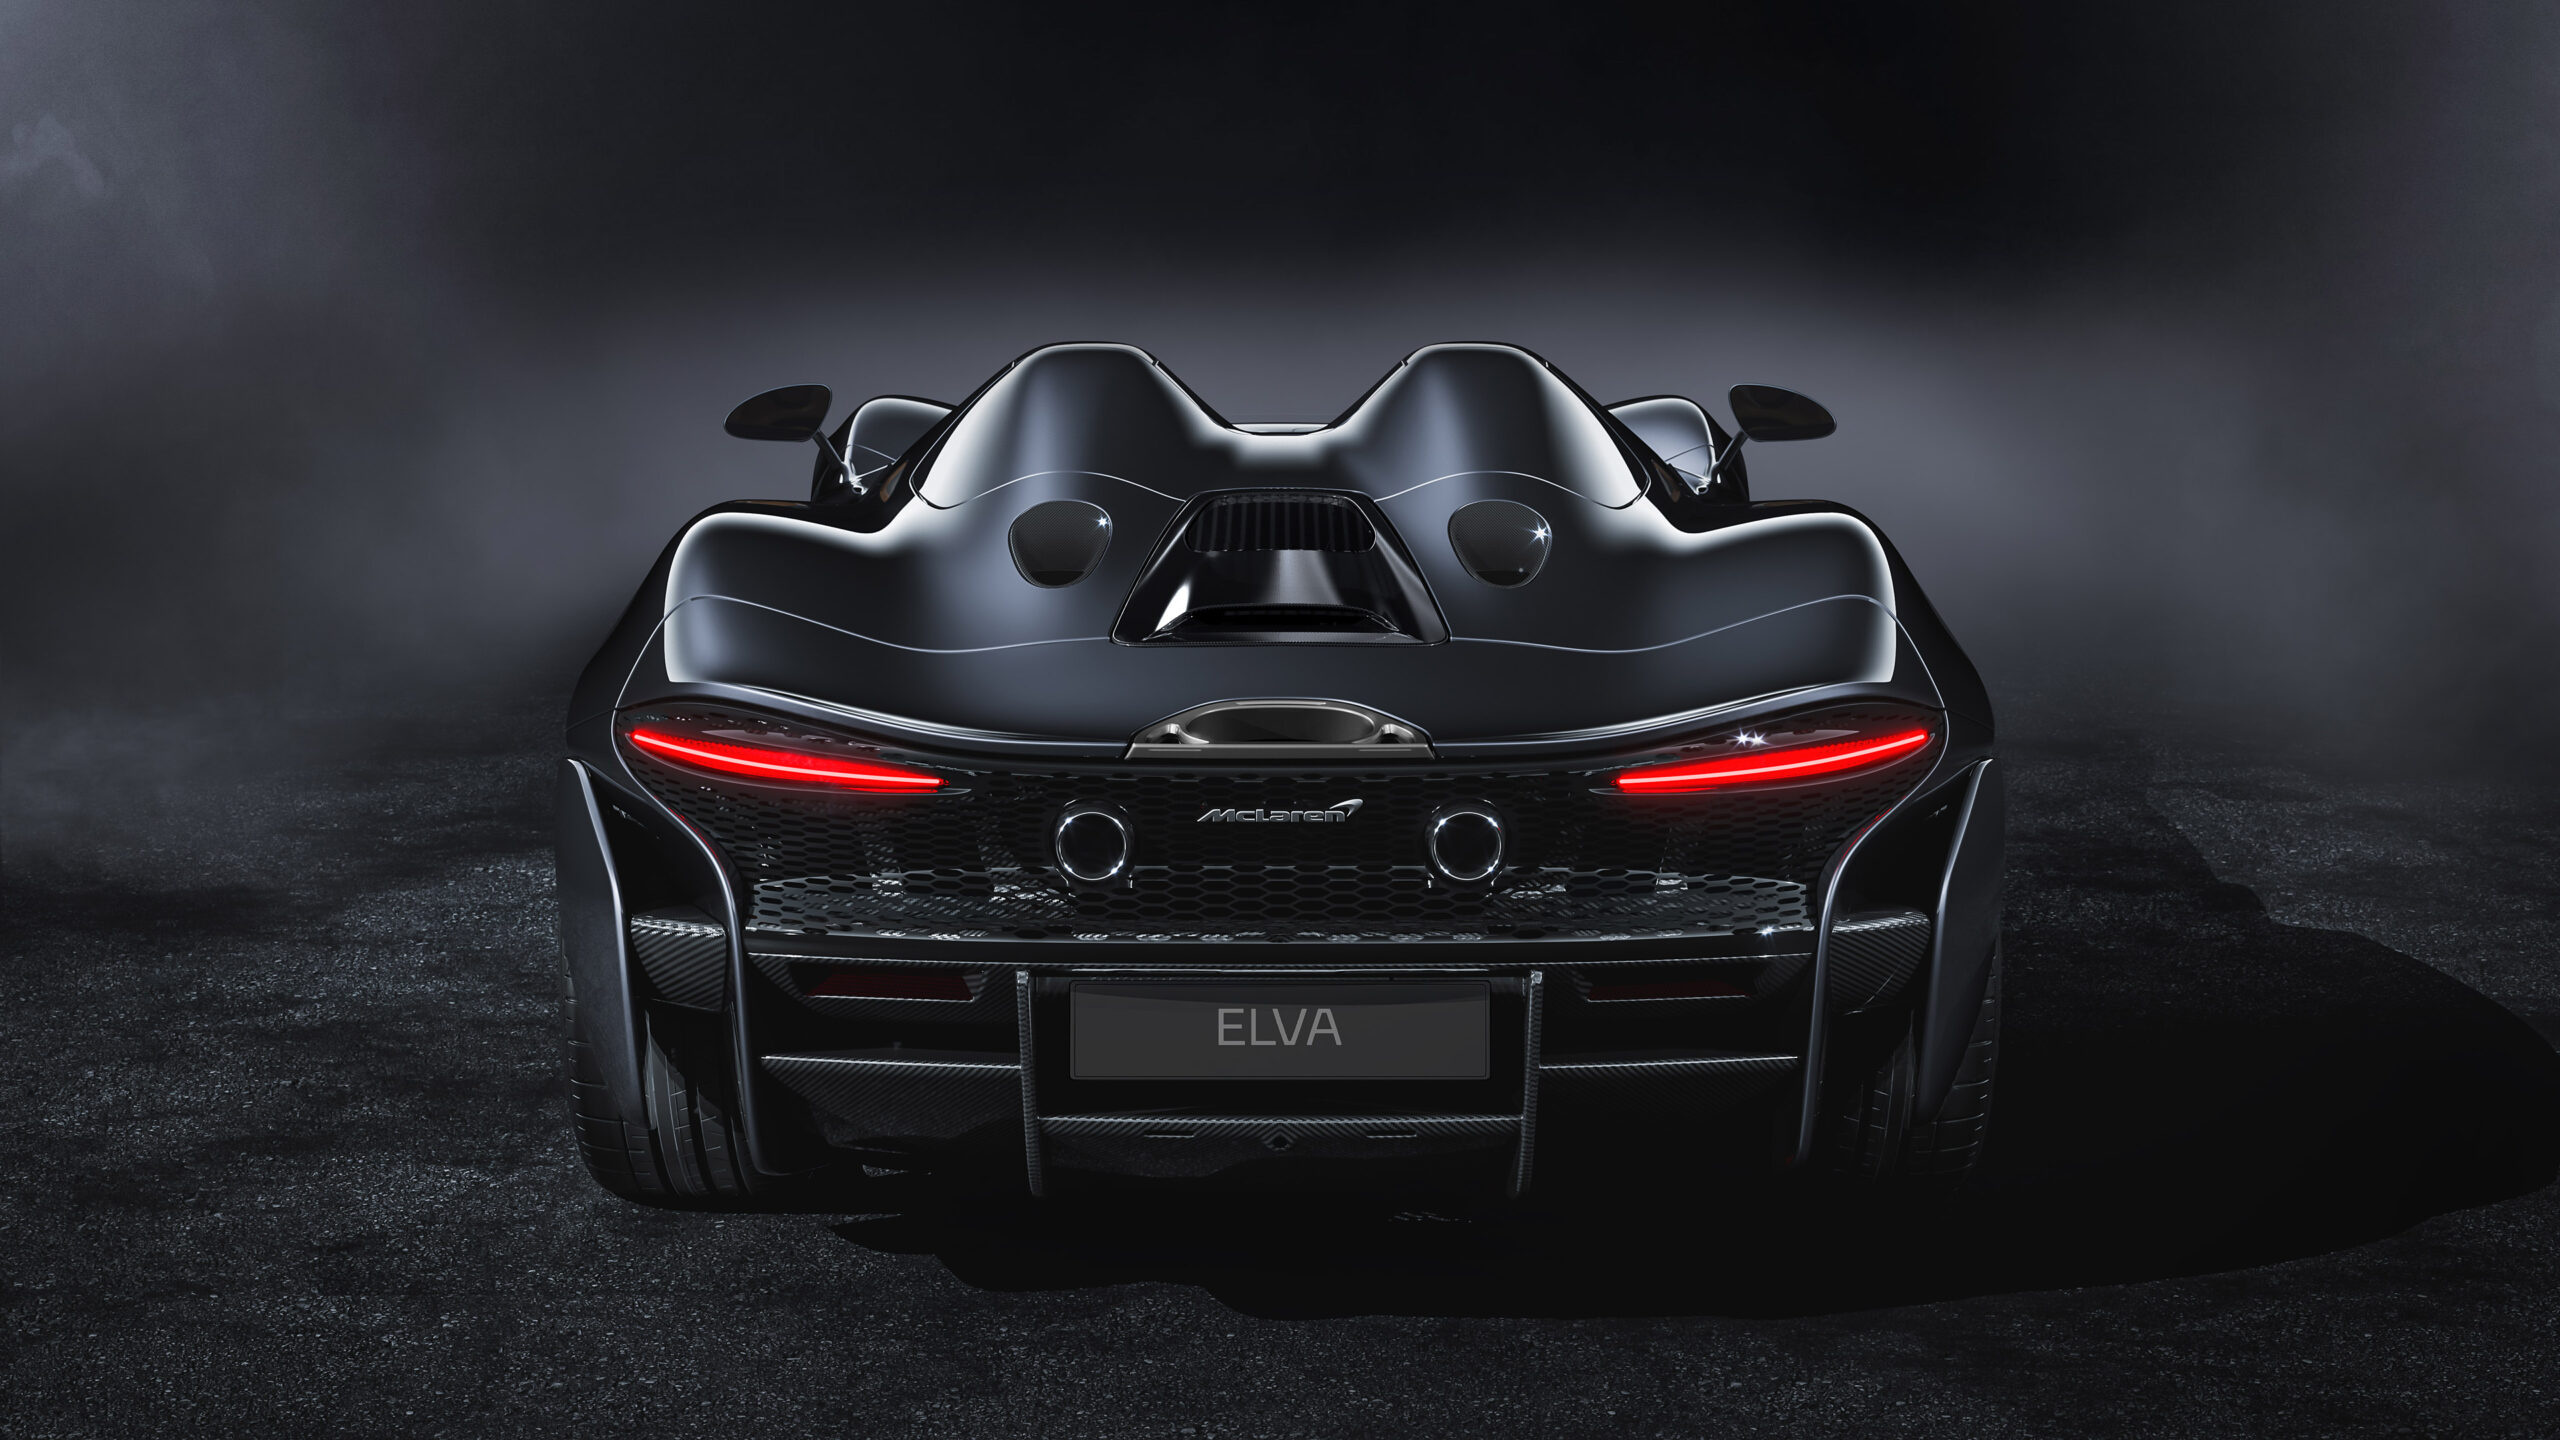 McLaren Elva, Speed and style, Stunning wallpapers, 2560x1440 HD Desktop